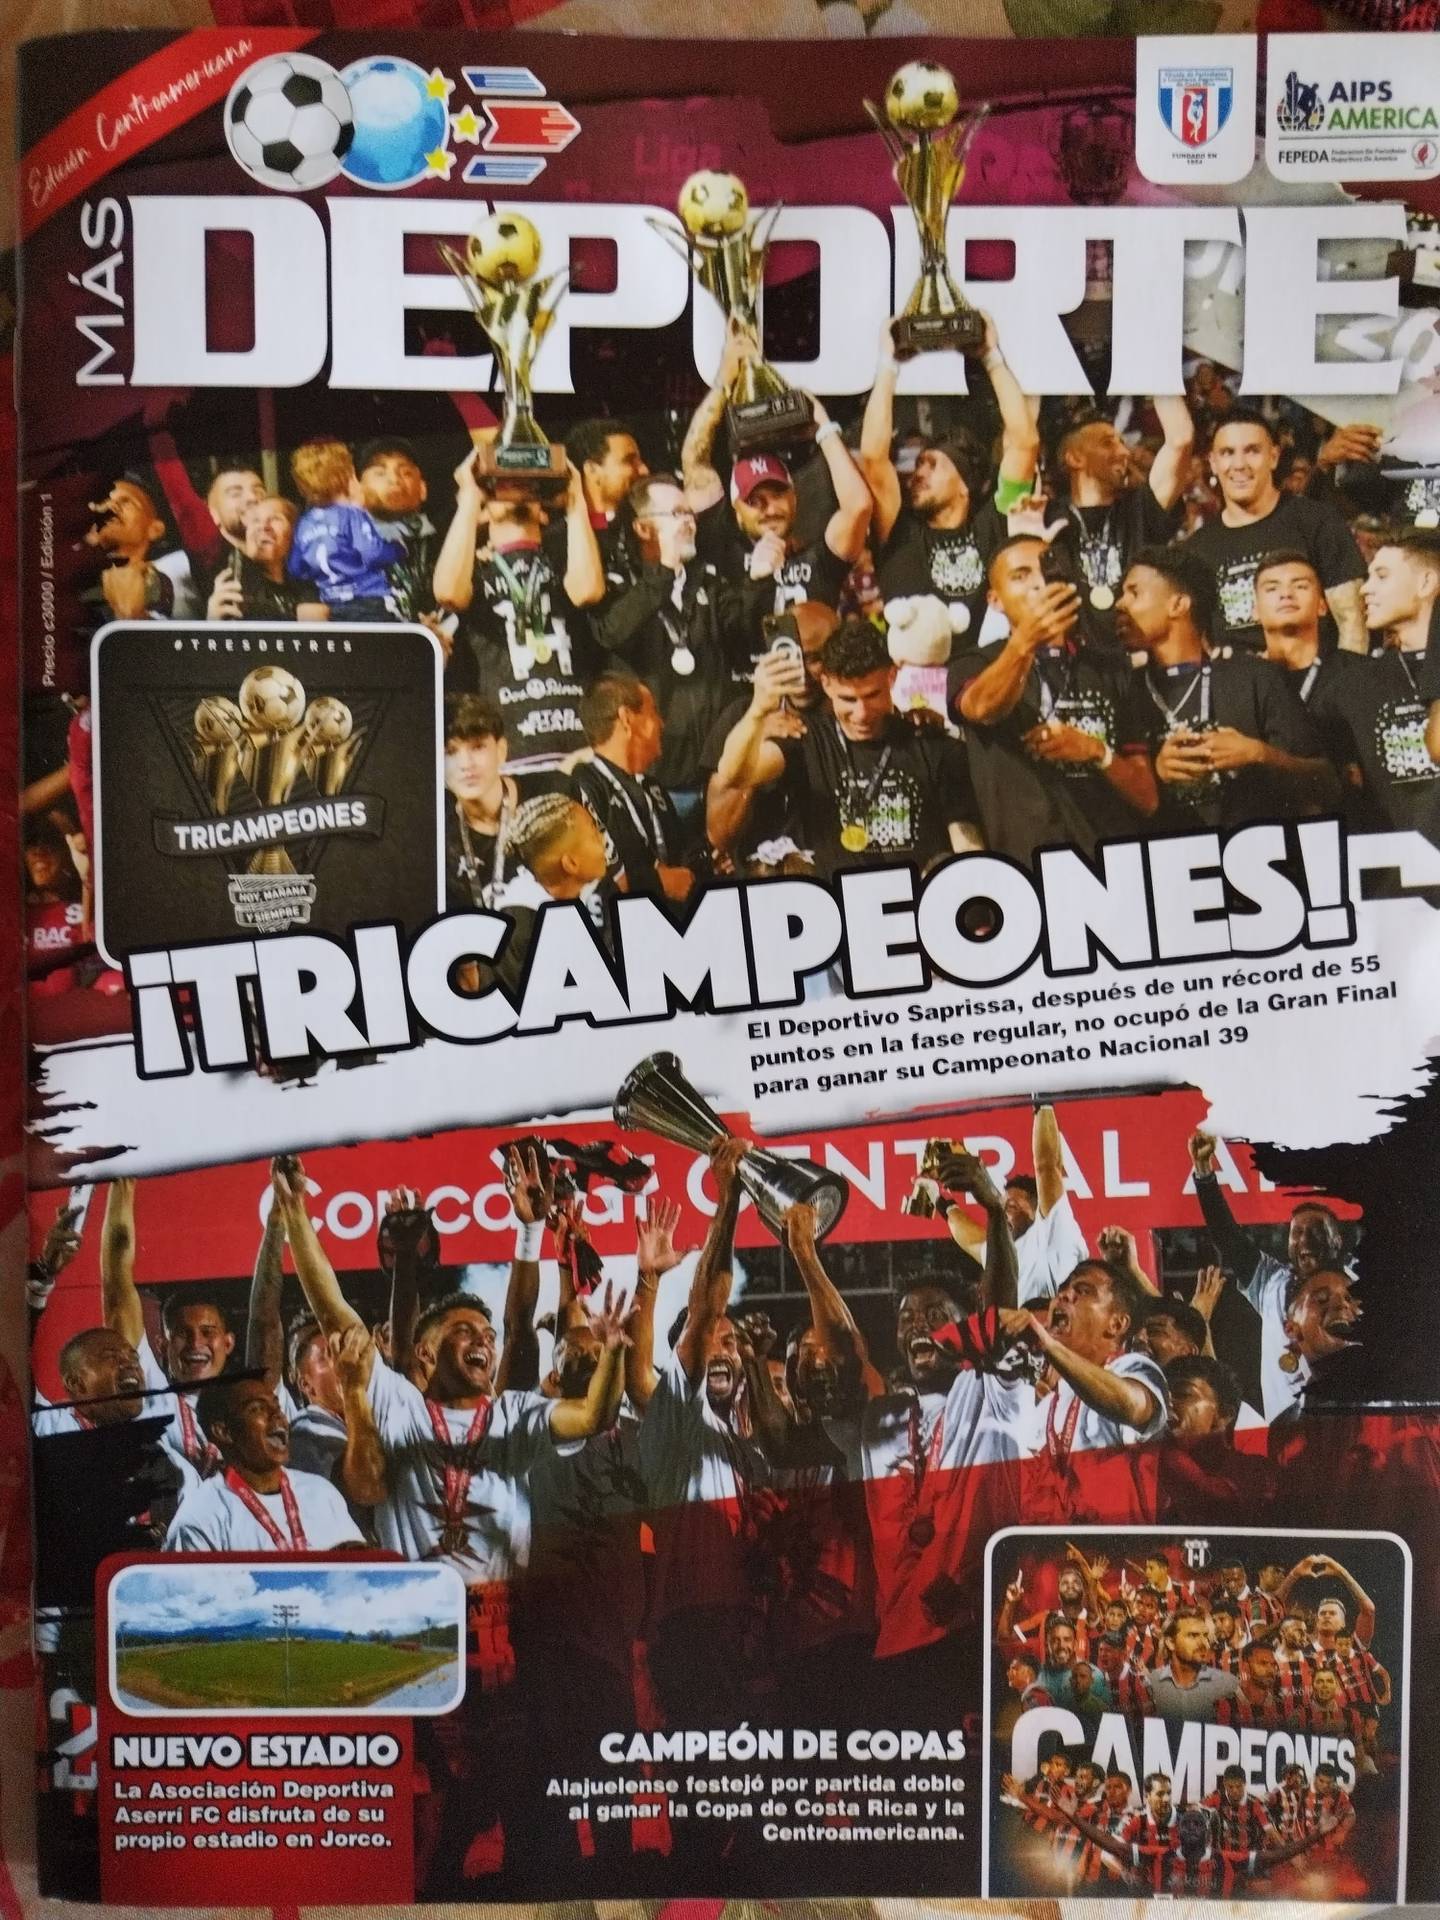 Ya se puede conseguir la edición impresa de la revista Más Deporte, en la cual se recogen las más recientes celebraciones de Saprissa y Alajuelense